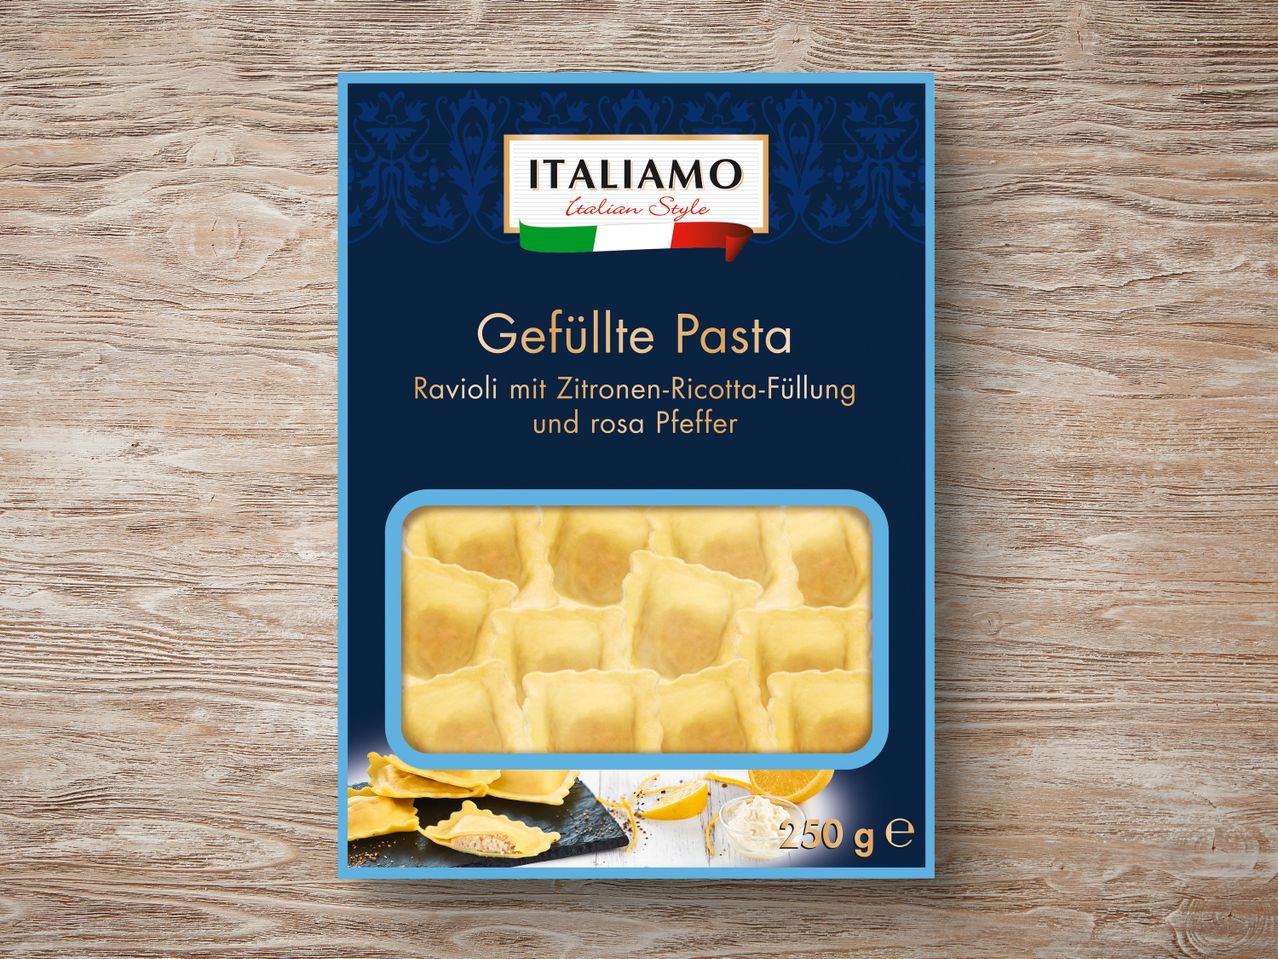 Premium Italiamo Pasta Gefüllte